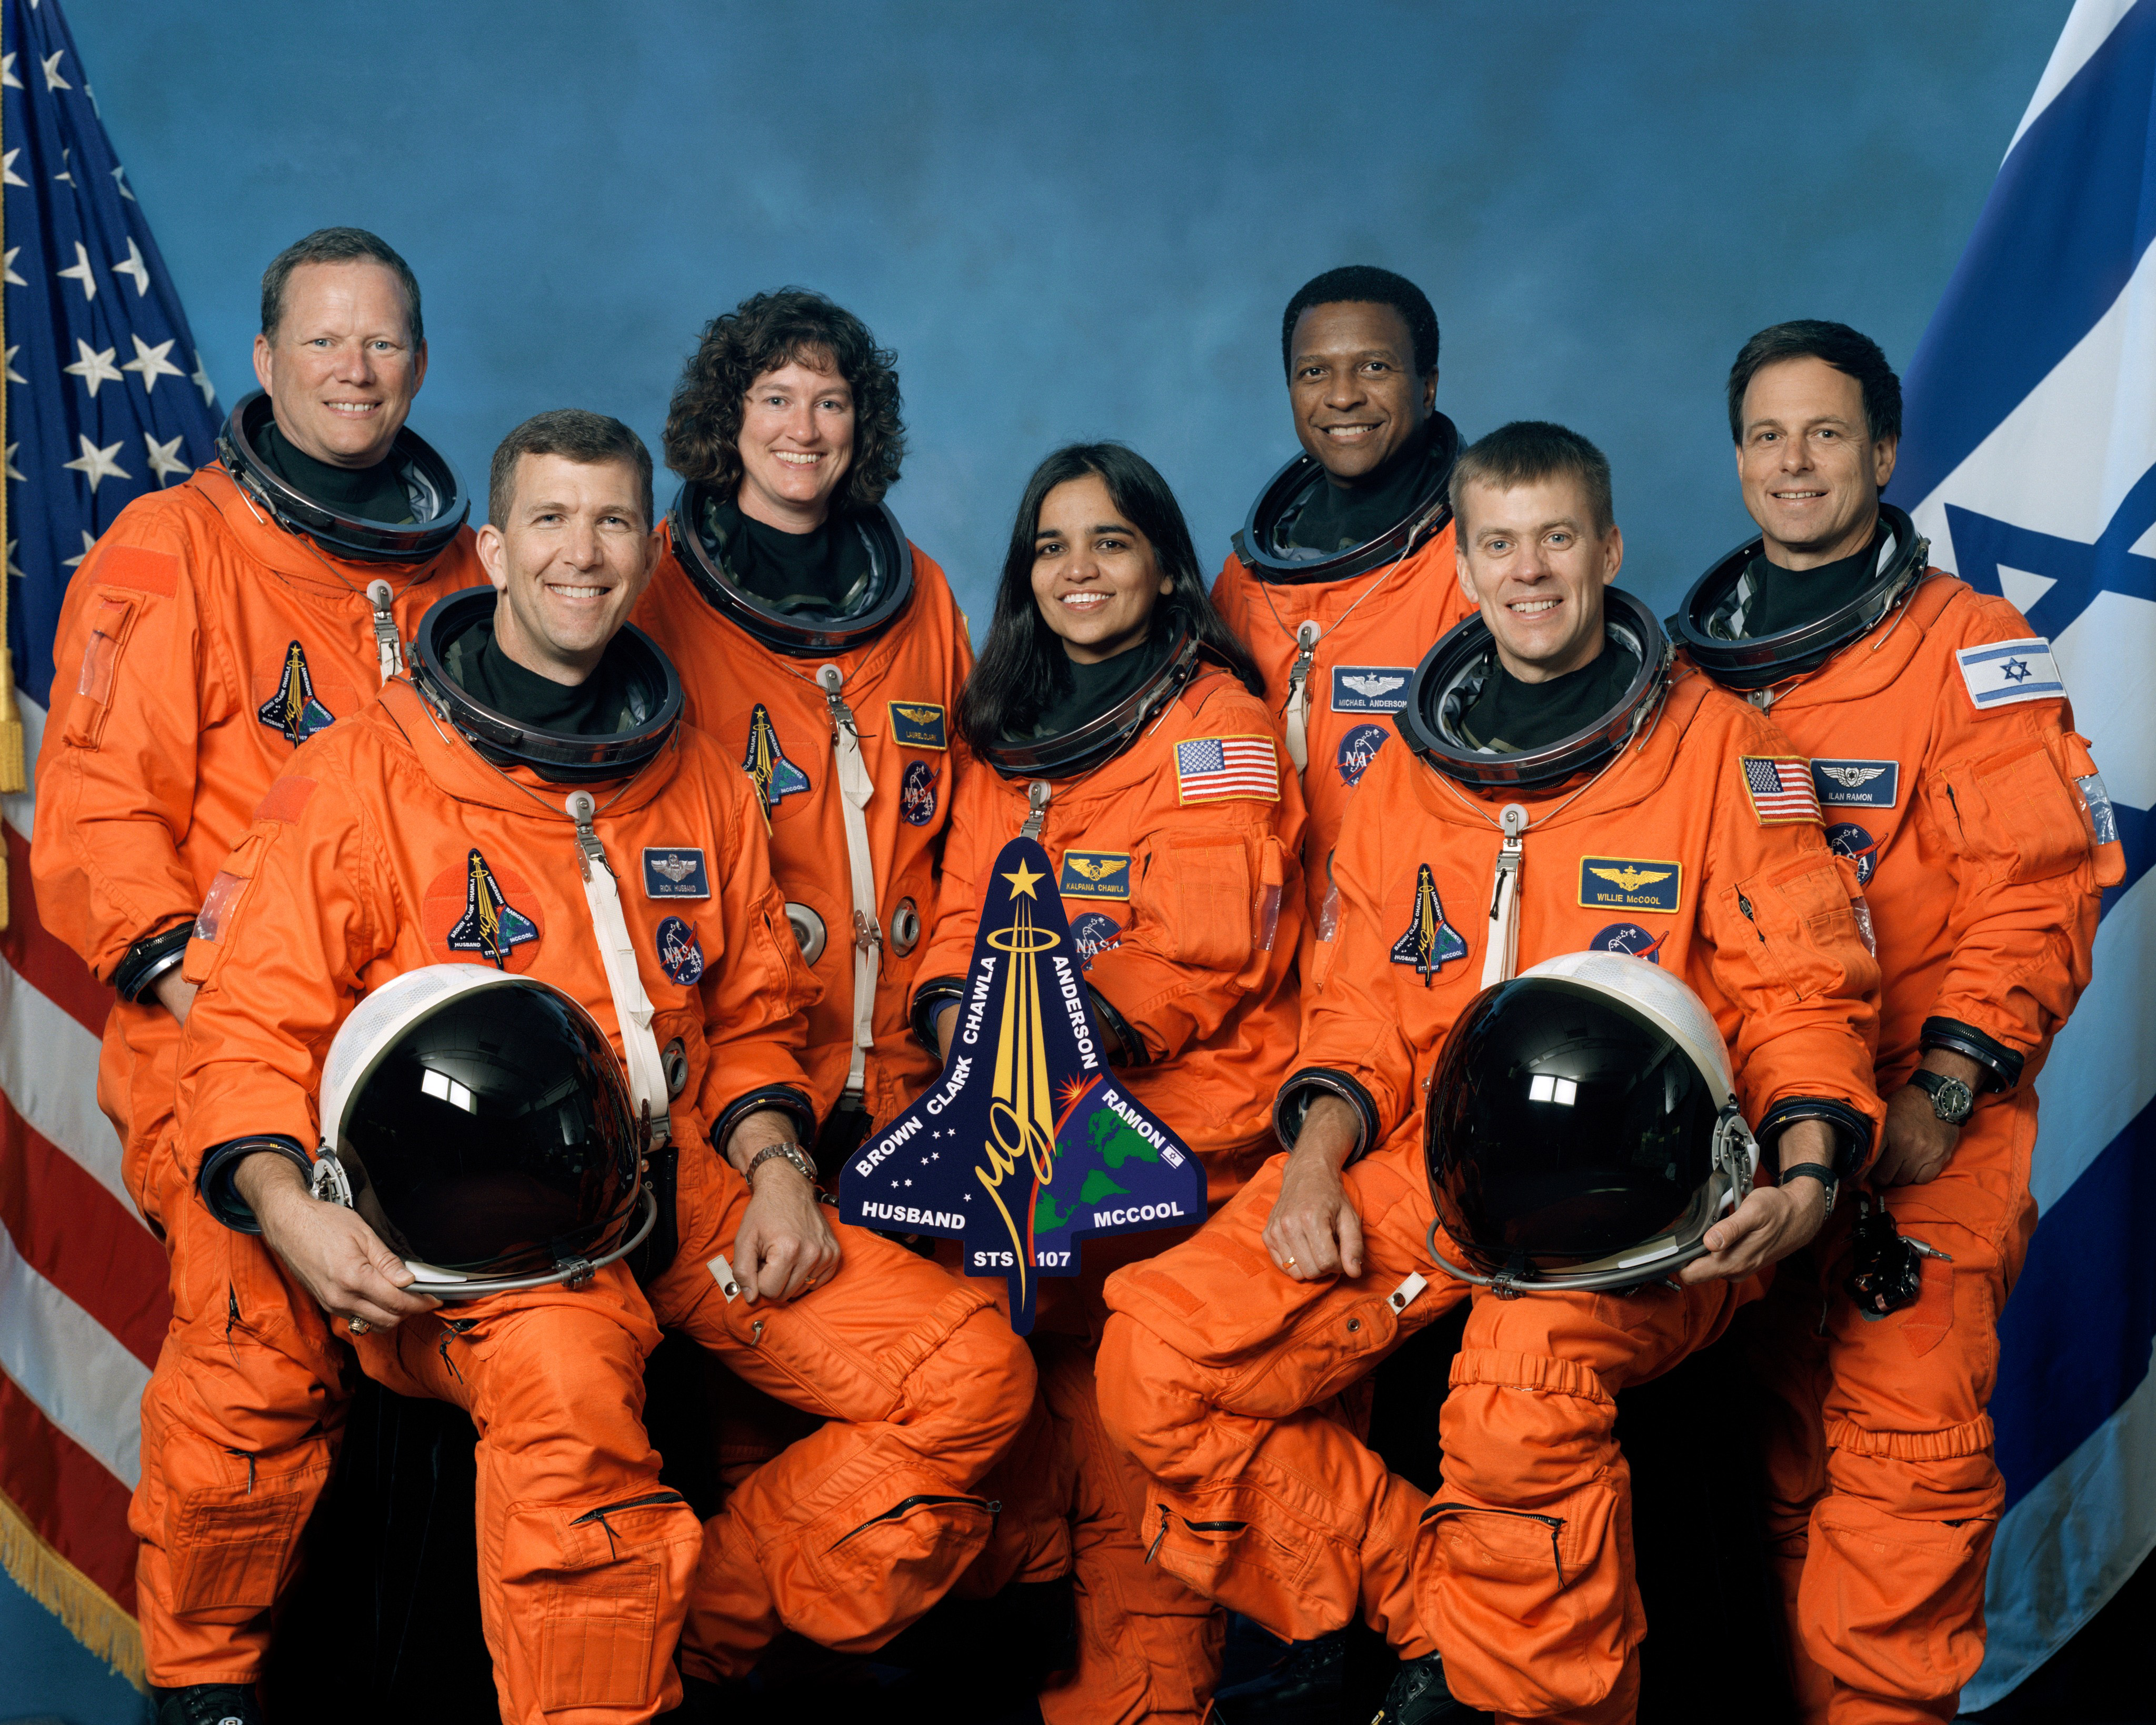 BIENVENUE au "ROI de la BIERE" 6 - Page 25 Crew_of_STS-107,_official_photo